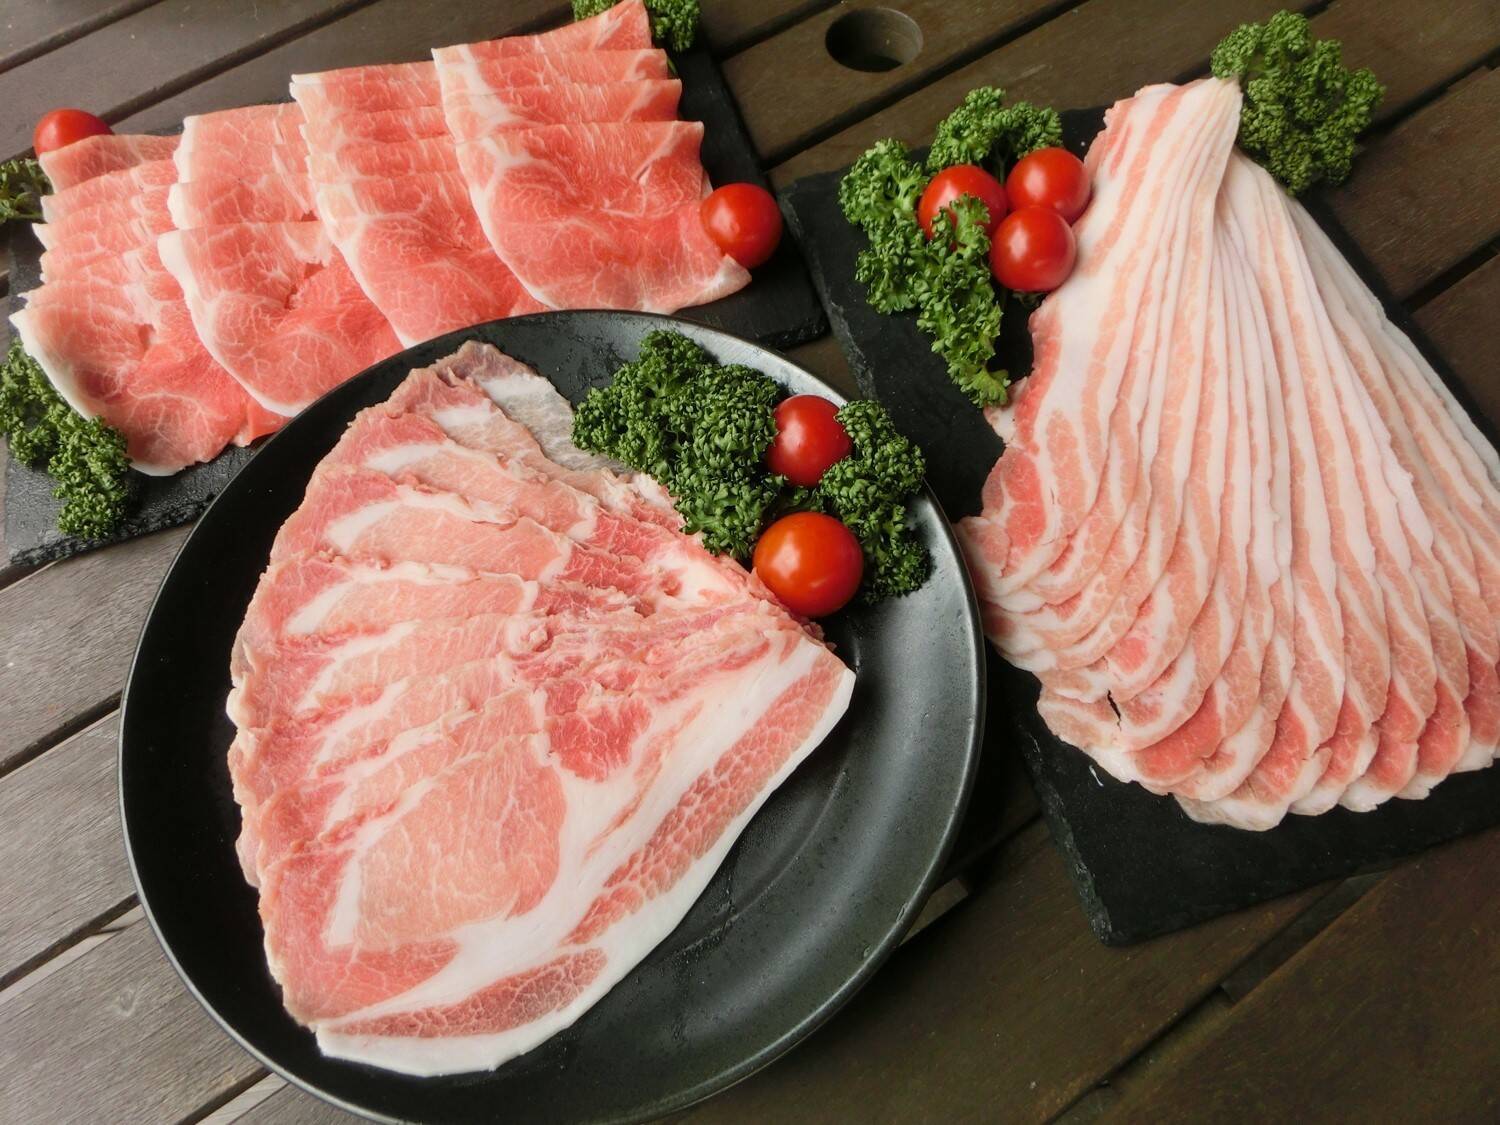 兵庫県産豚カタスライス五キロ